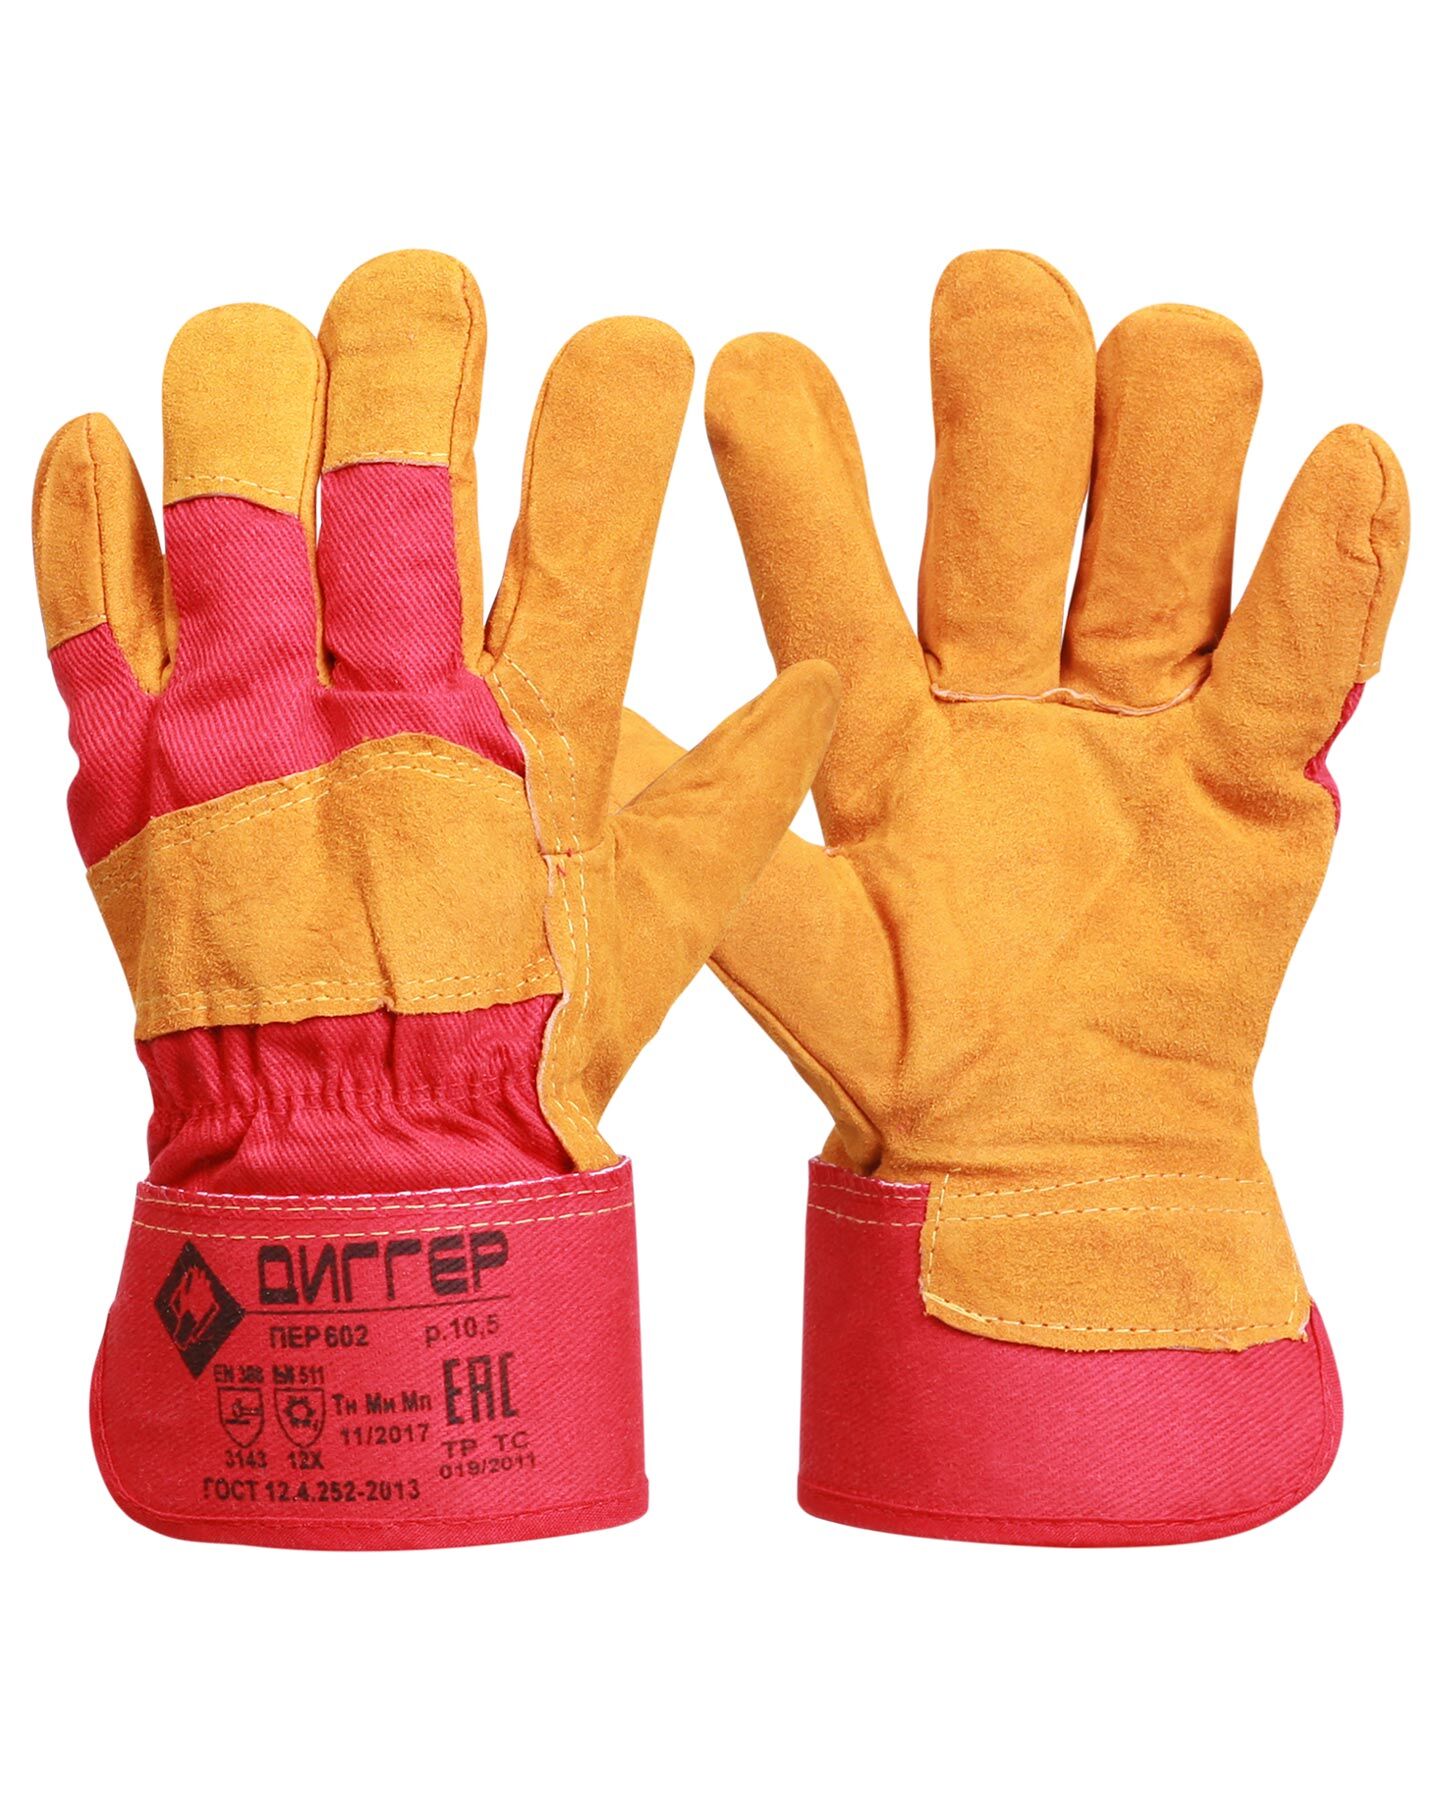 Перчатки утеплённые спилковые ДИГГЕР комбинированные мех 750 г/м2, жёлто-красные, дл.27 см, р10.5 (пер602) 1